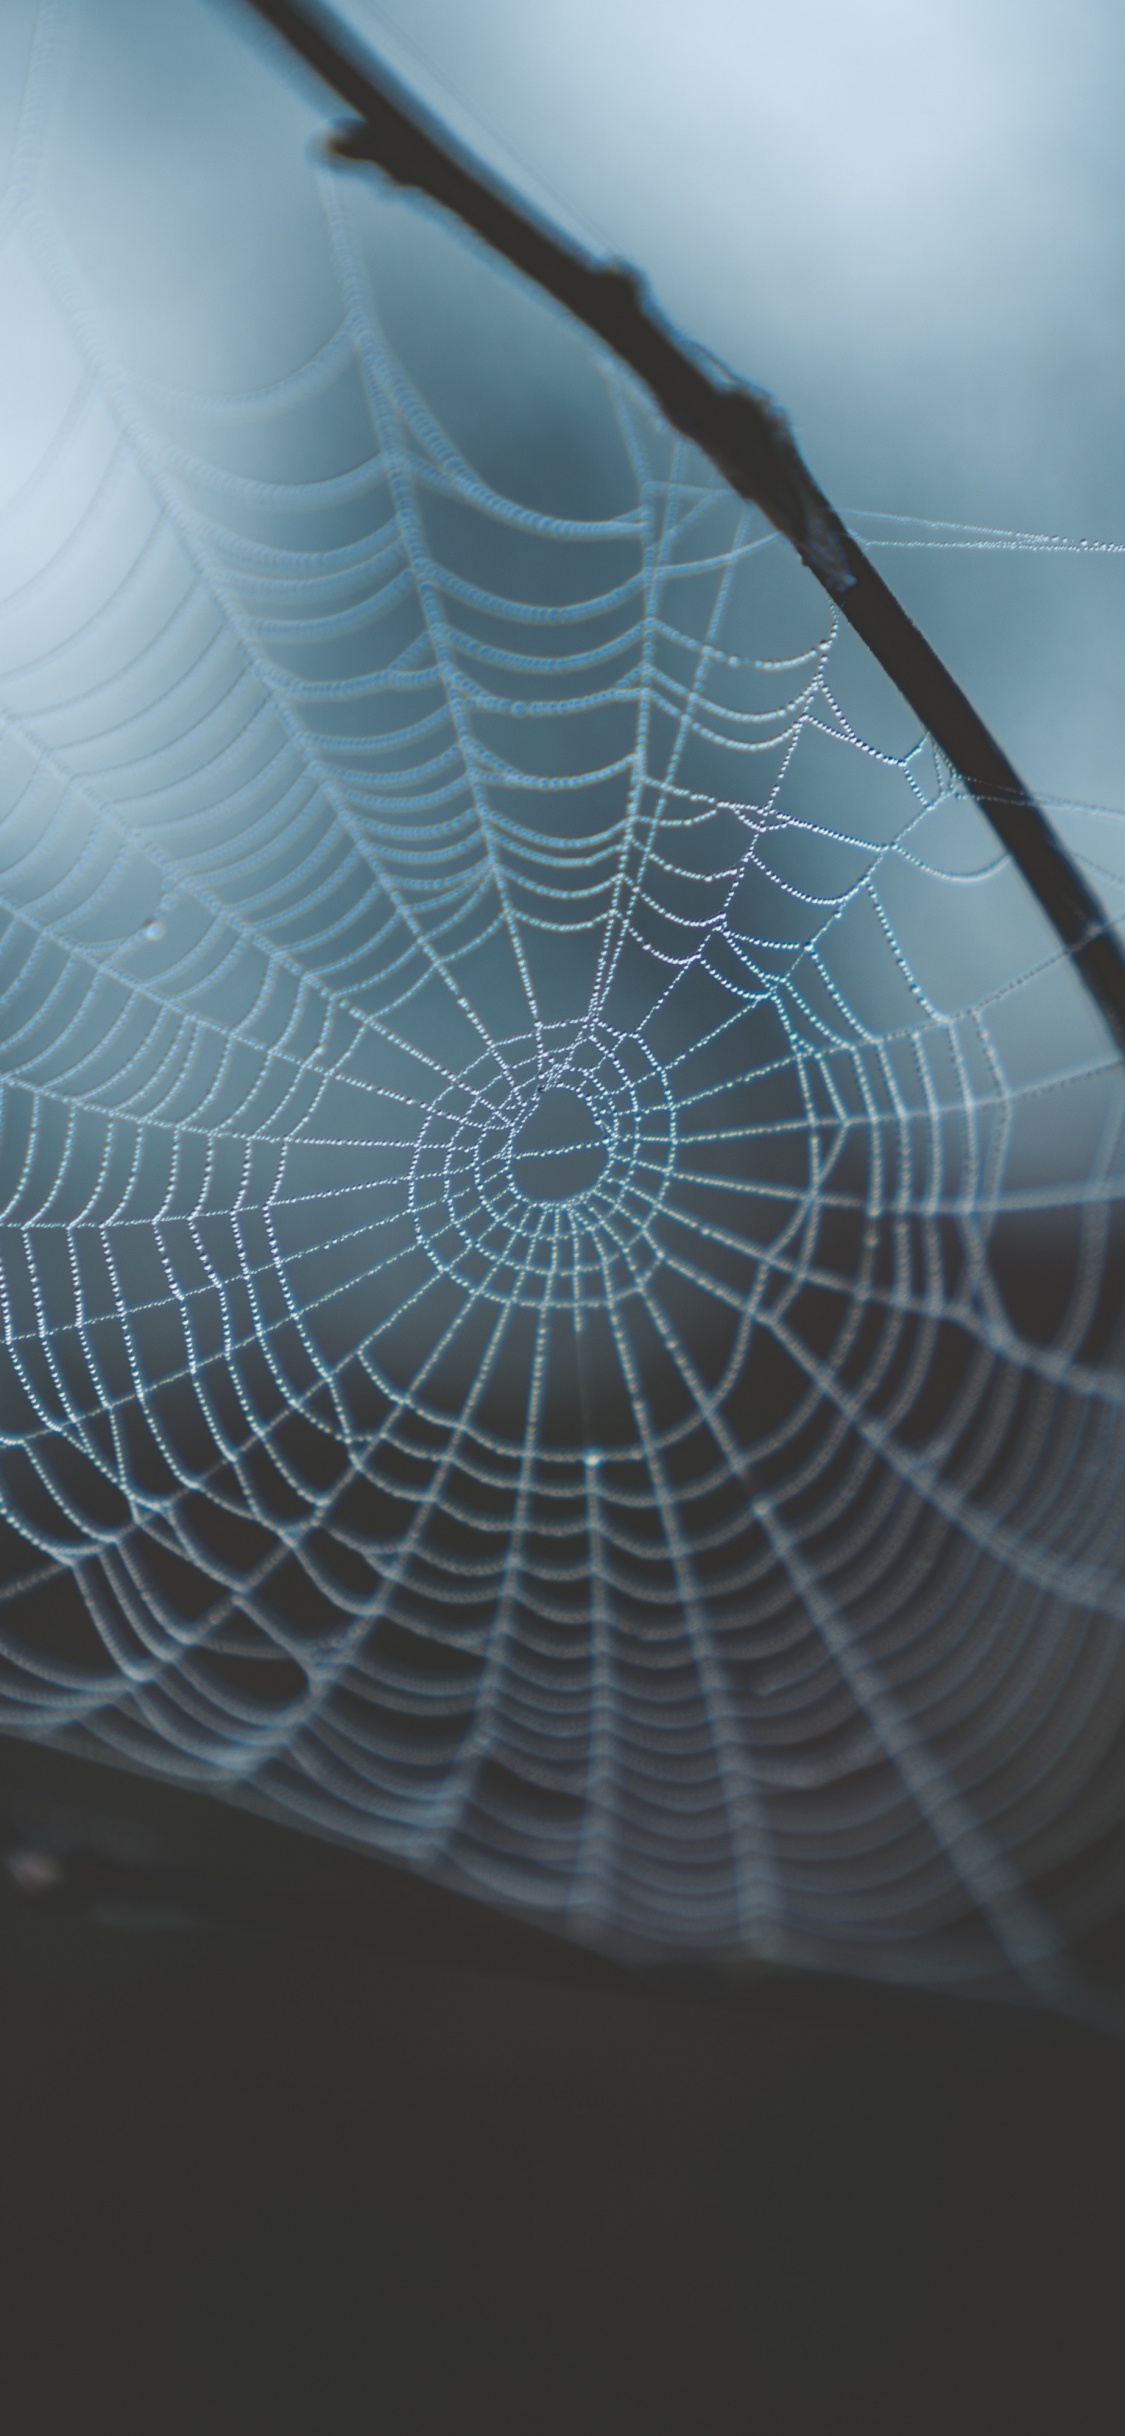 蜘蛛网, 早上, 光, 透明材料, 天空 壁纸 1125x2436 允许